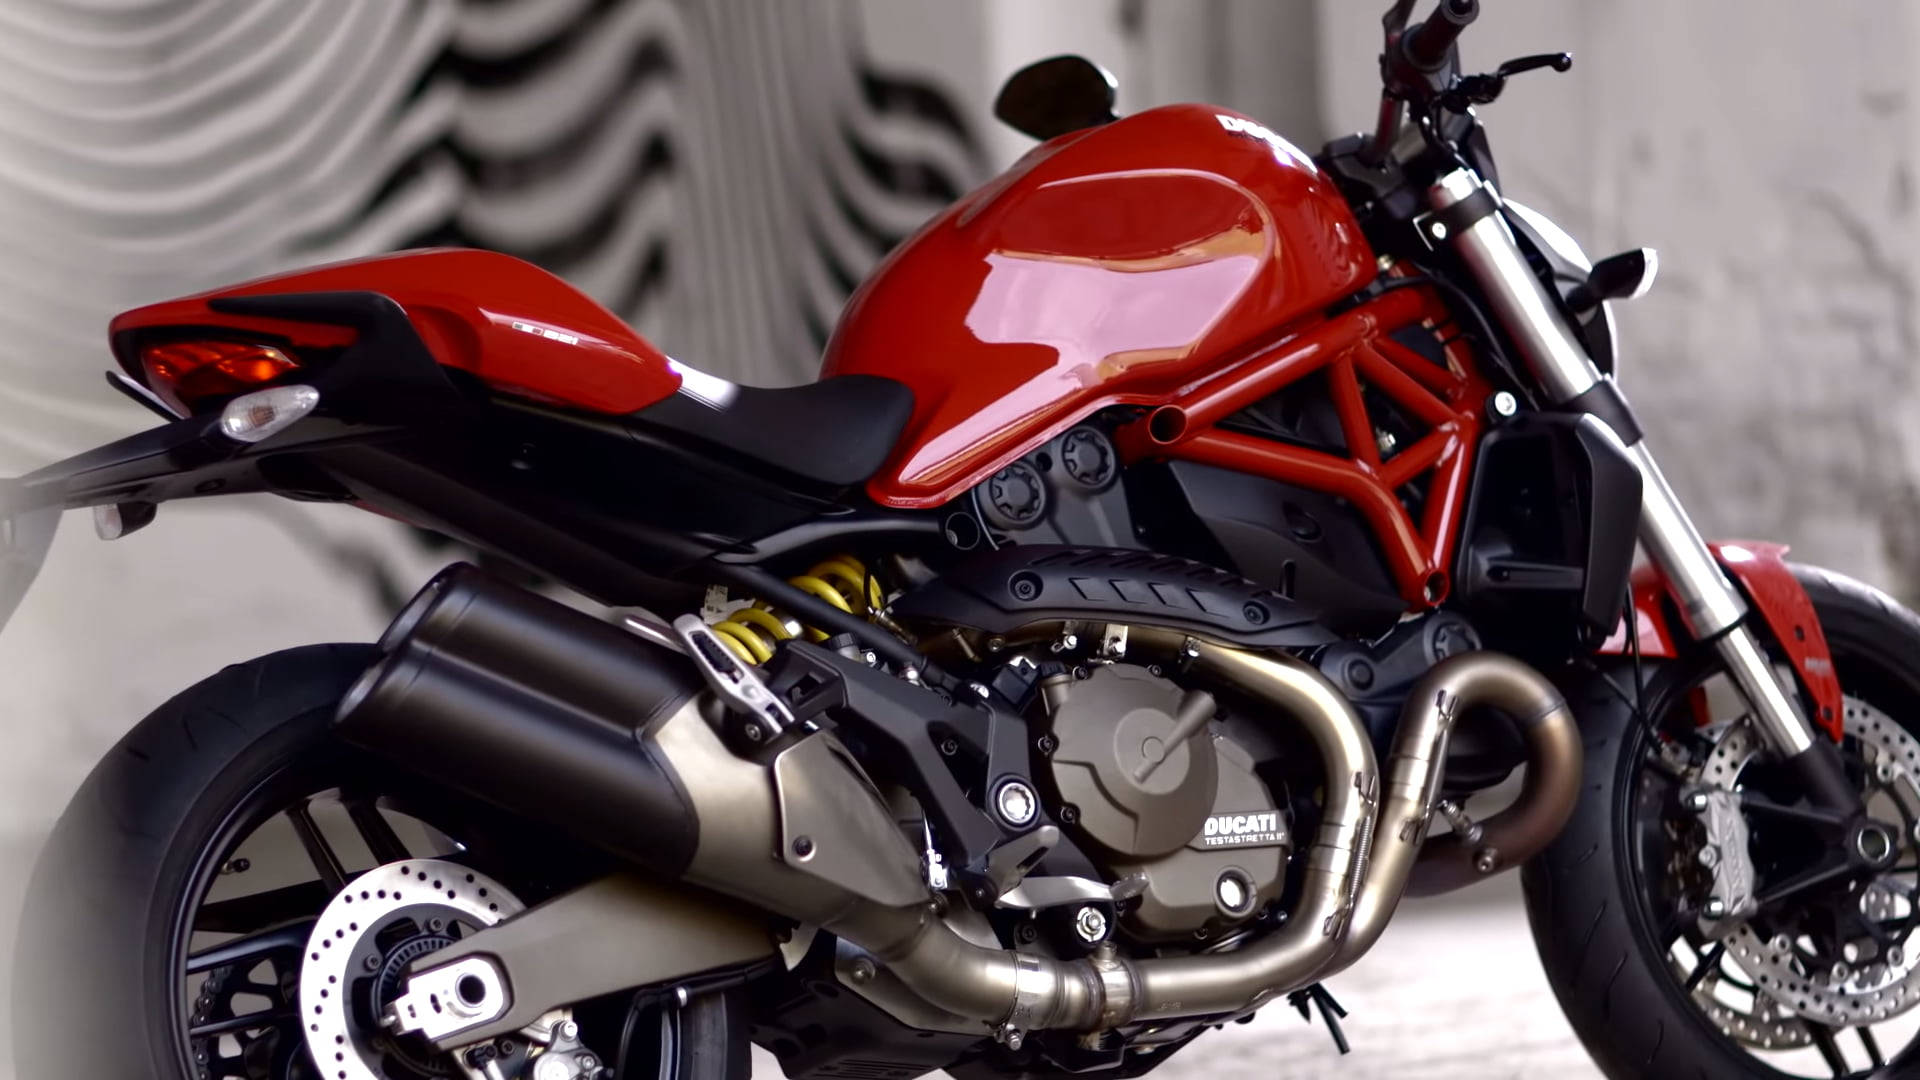 Ducati Monster 1200 - A High Killer Performance. Wallpaper